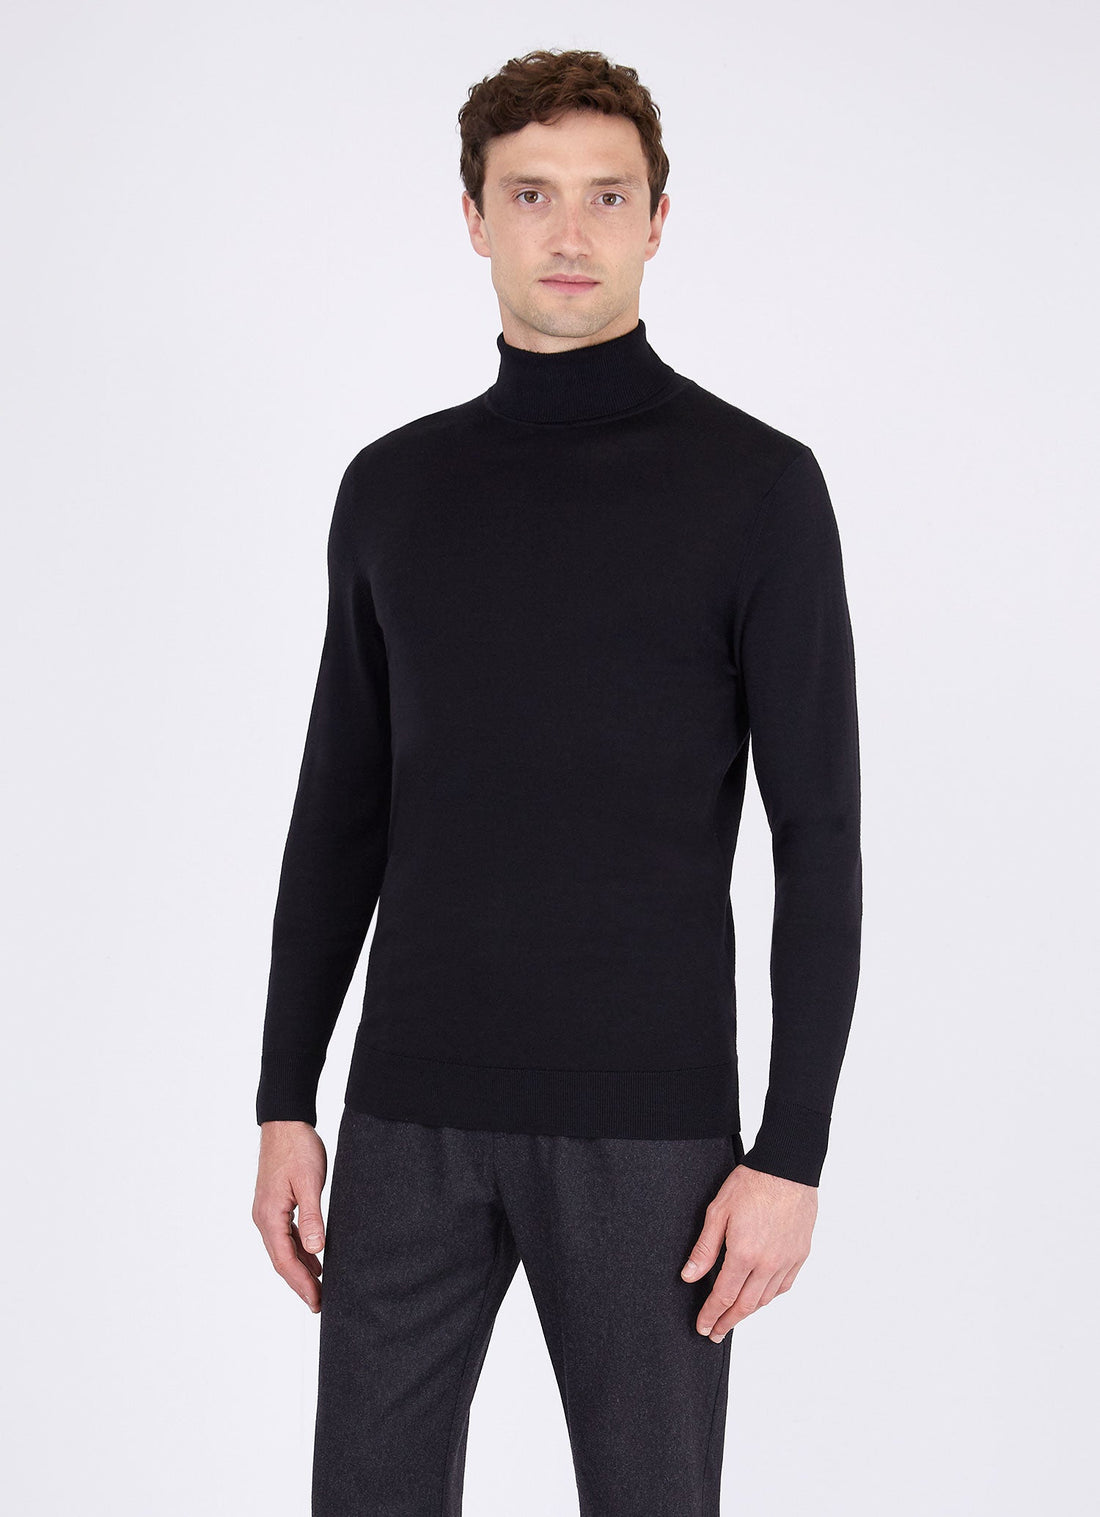 Men's Sea Island Cotton Roll Neck Sweater in Black